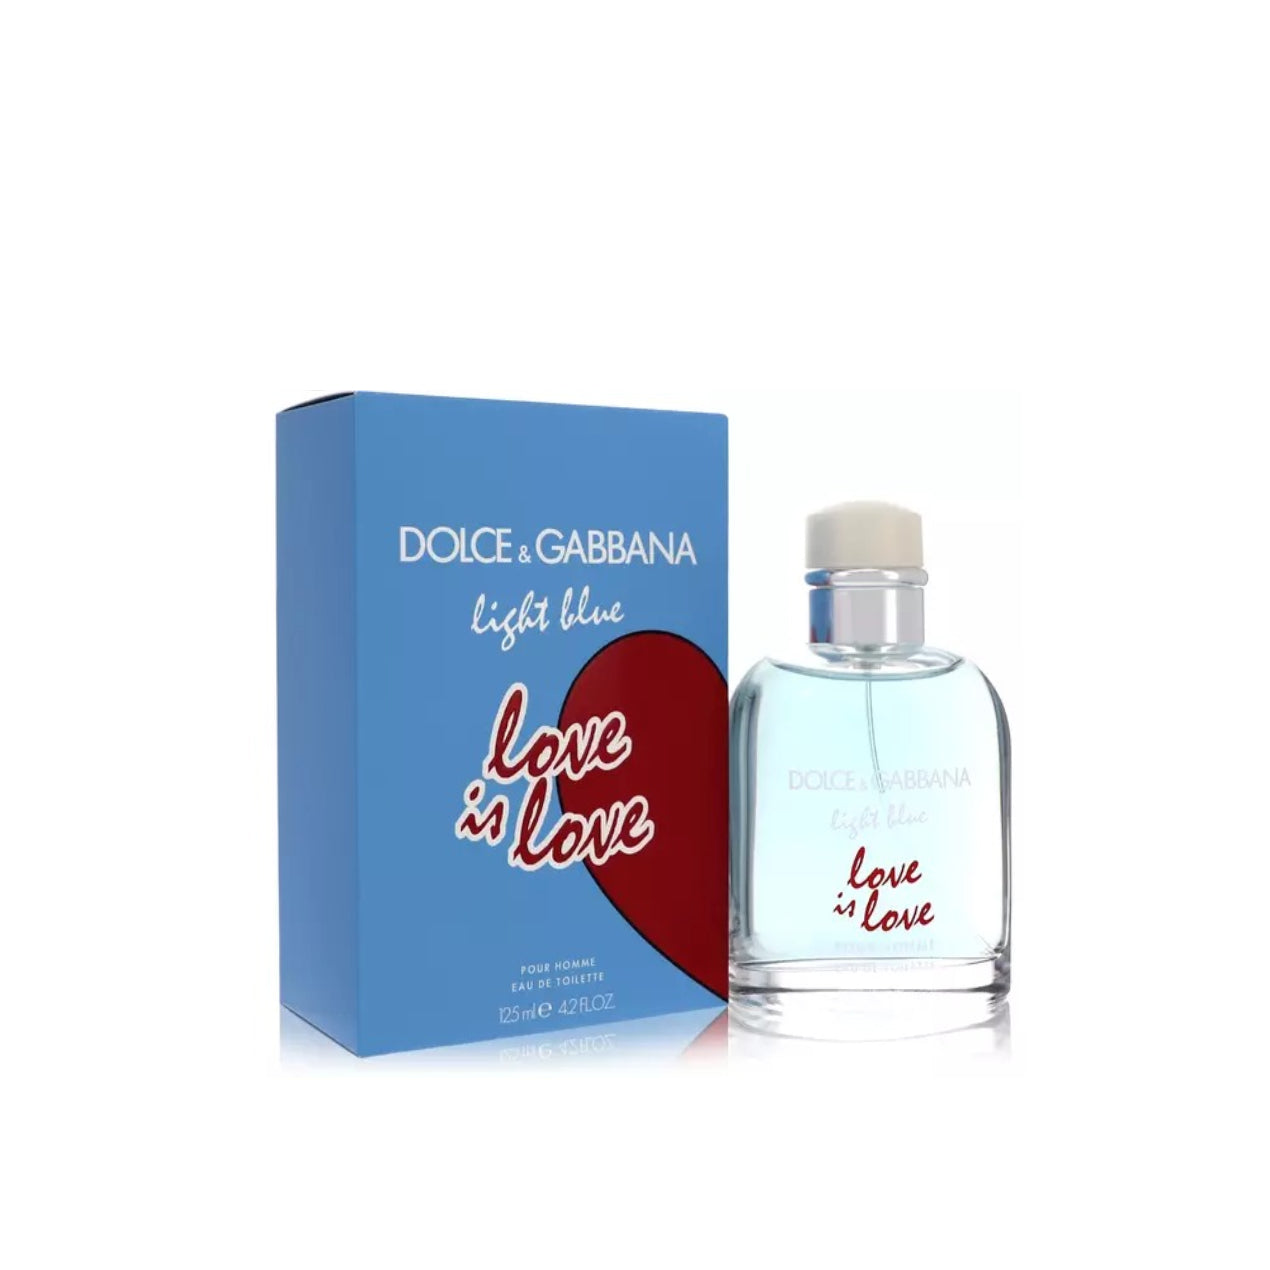 Light Blue Love Is Love Cologne Perfume for Men